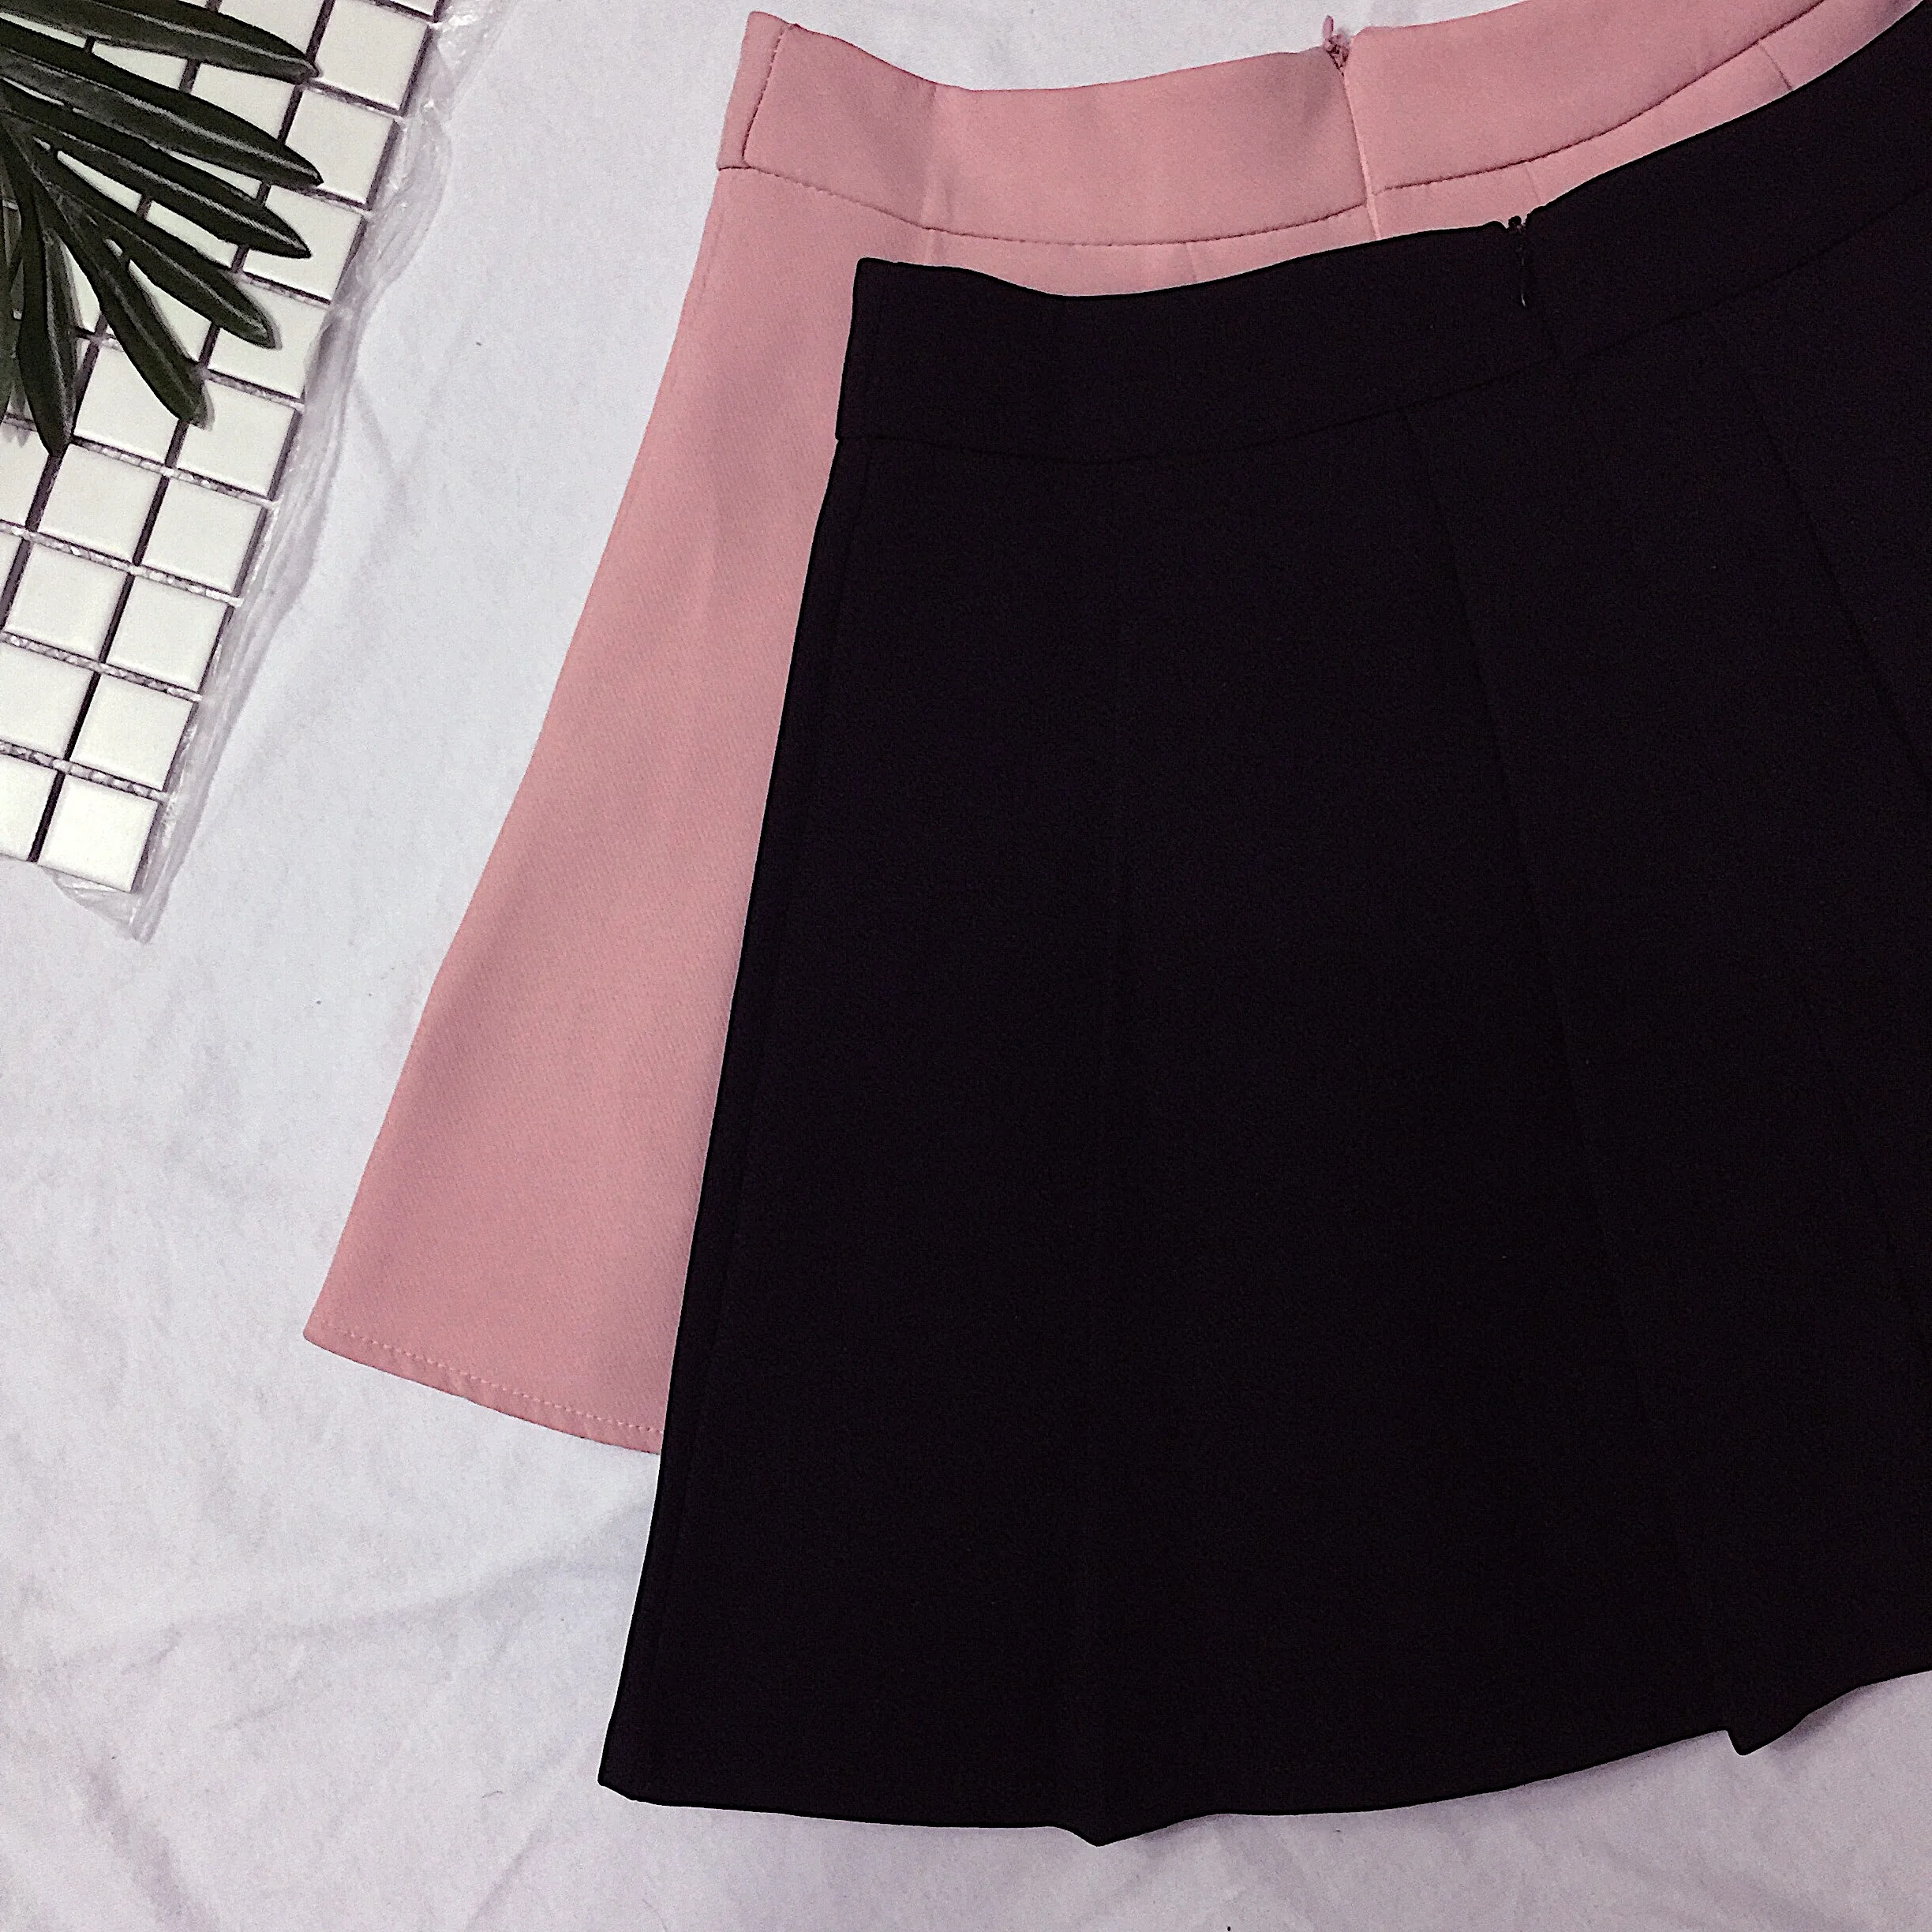 Harajuku Стиль Для женщин летние юбки Прекрасный Сердце Вышивка плиссированная юбка Высокая Талия розовый/черный милые женские юбки